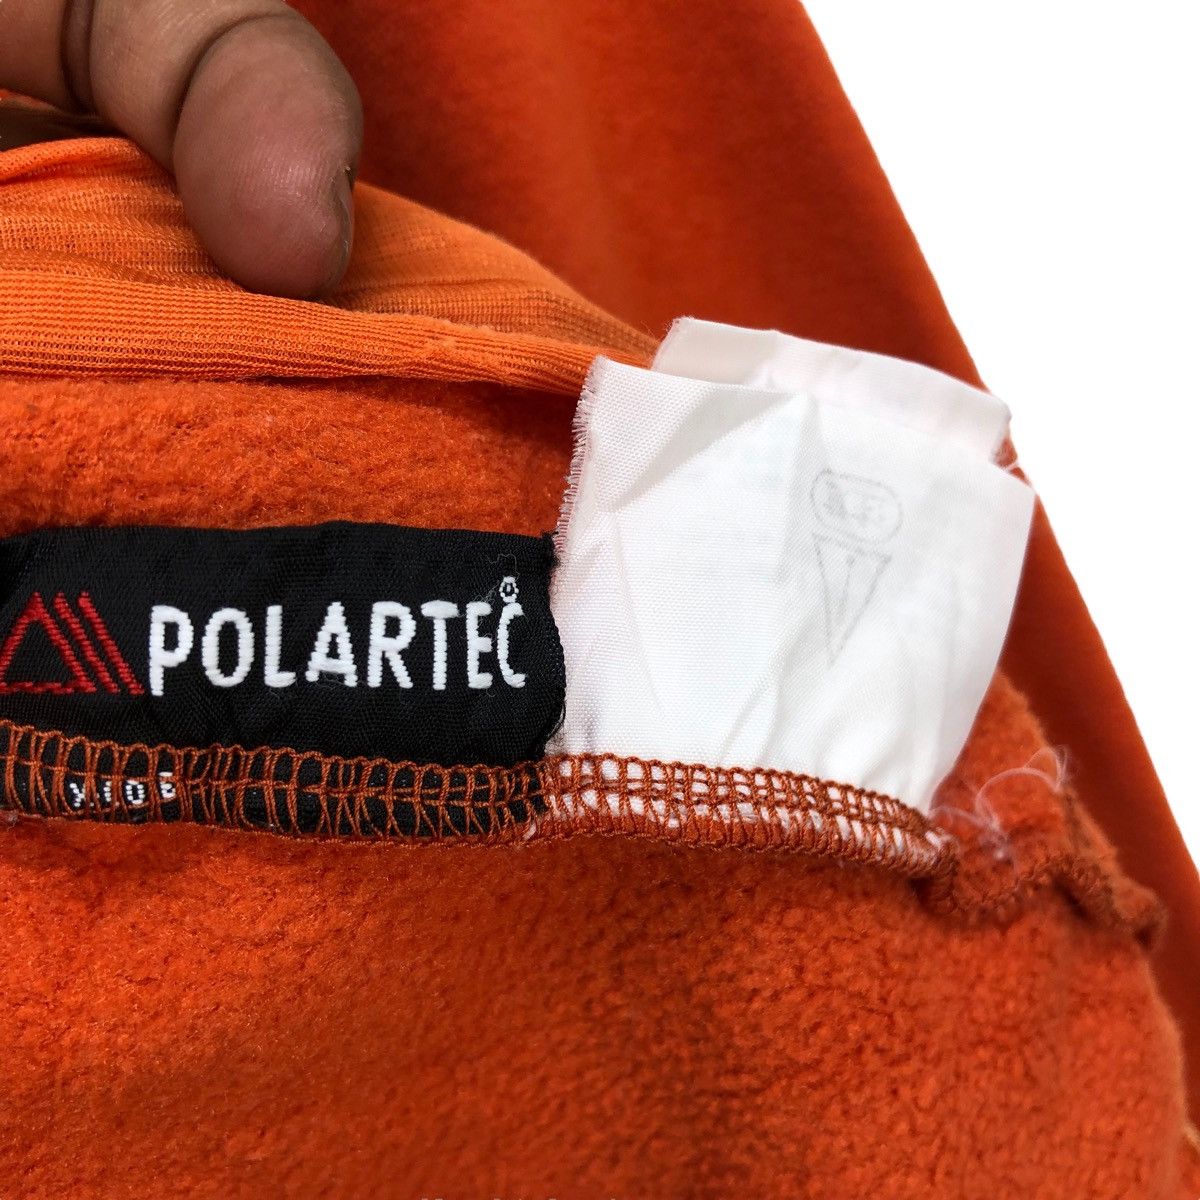 The North Face Polatec Fleece Zipper Jacket - 7